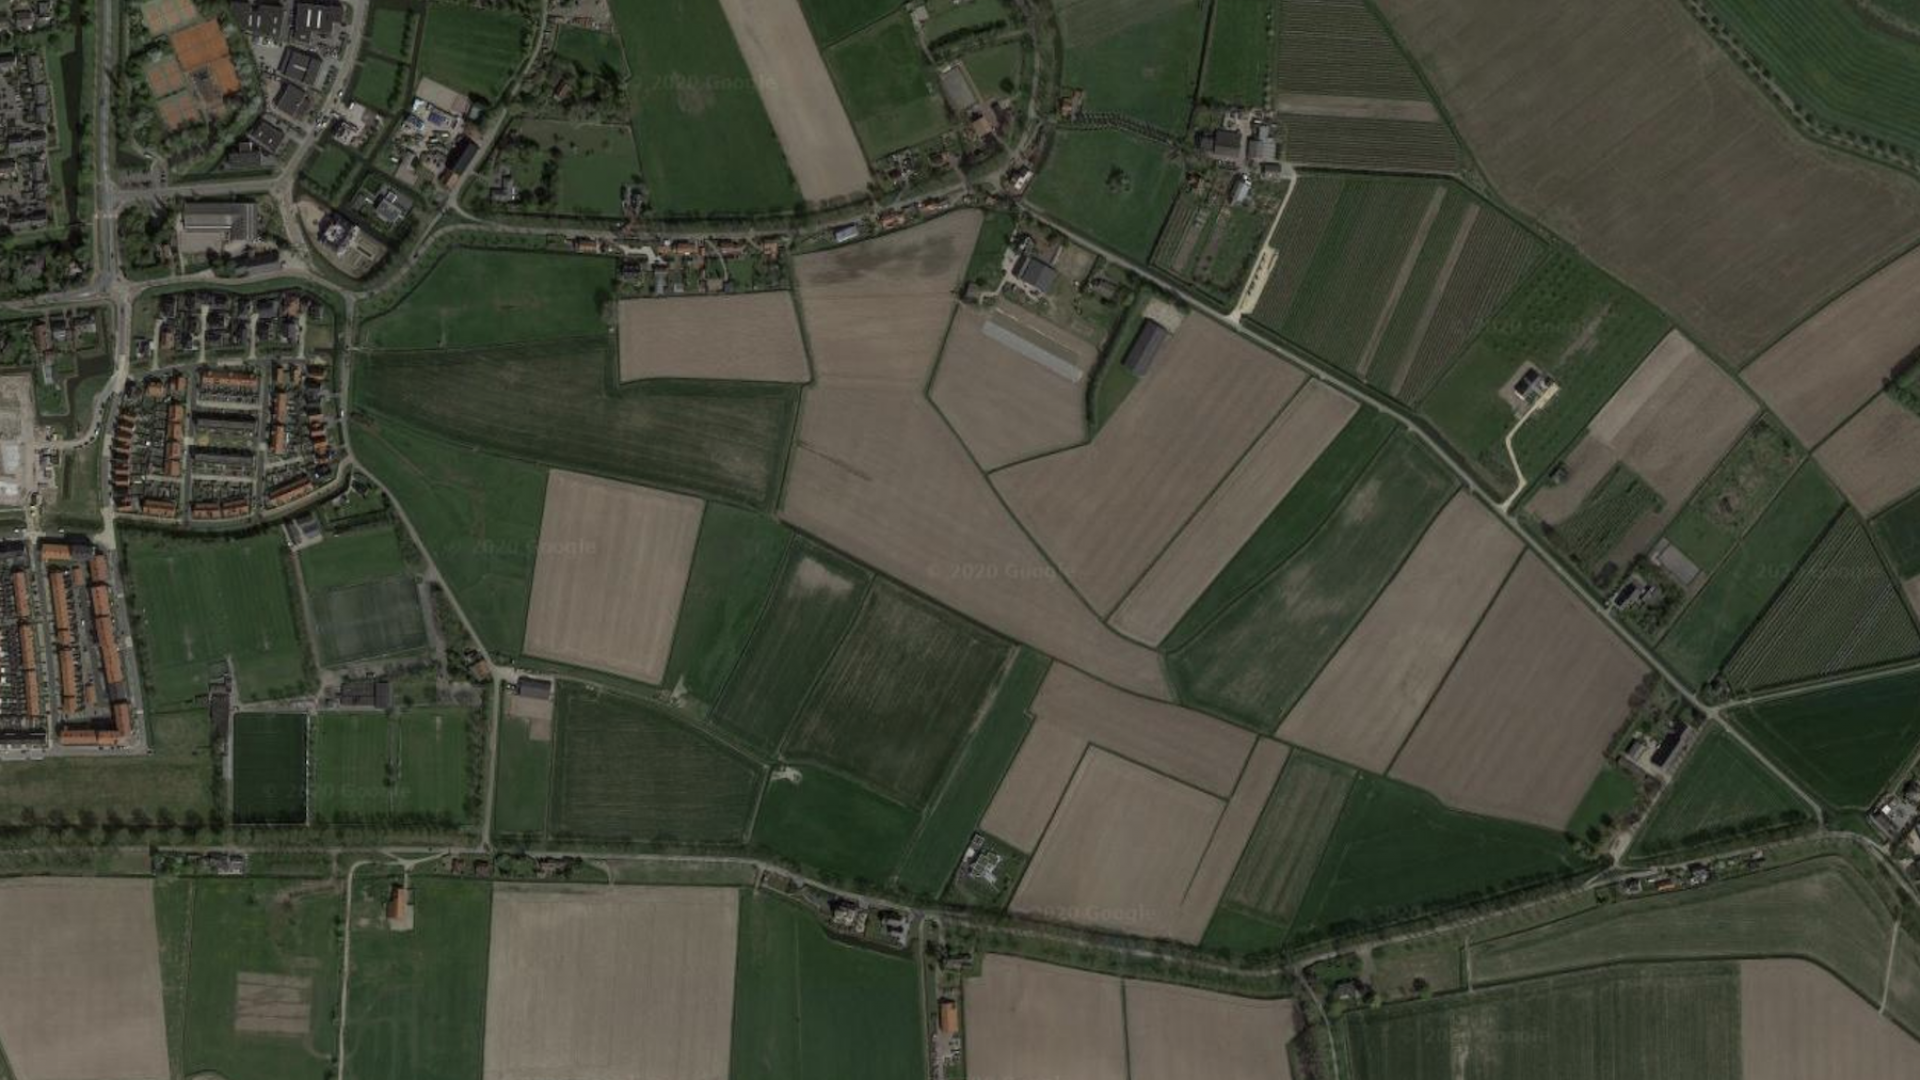 Links 'Sportpark de Omloop' en rechts 'De rand van Rhoon' (via Google Maps)